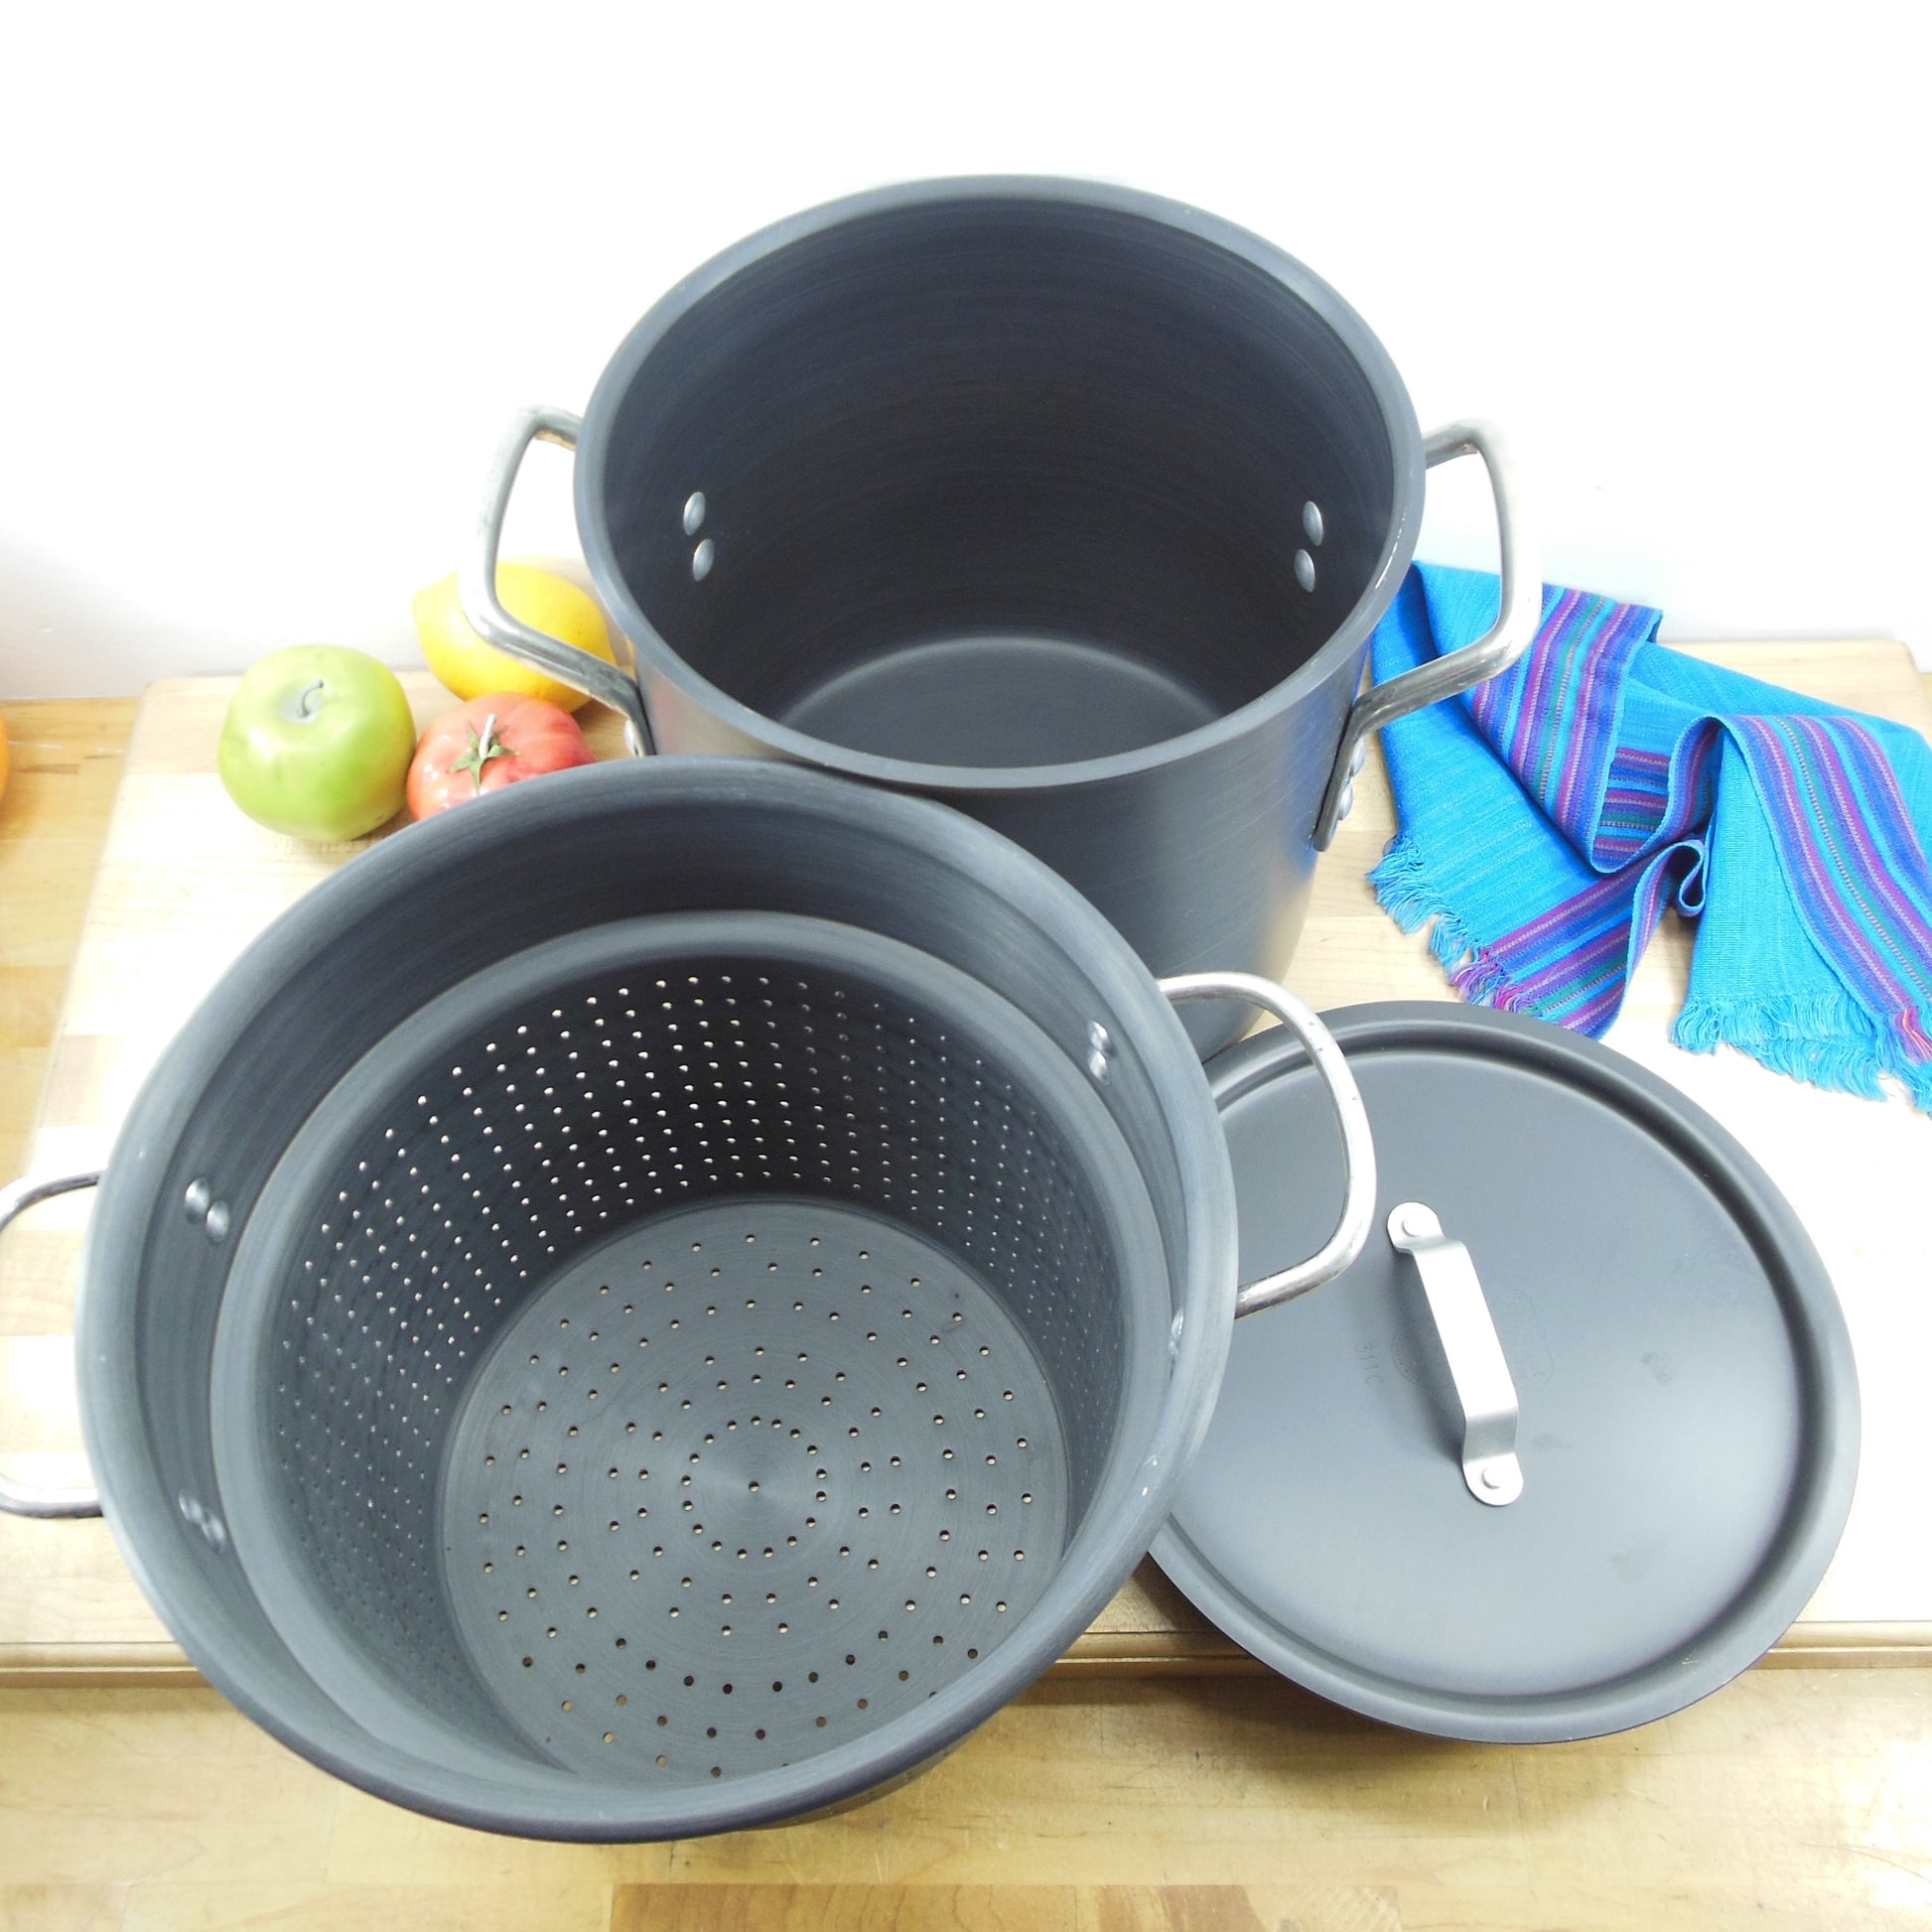 Aluminum pots, aluminum cookware, aluminium pot, commercial aluminum  cookware